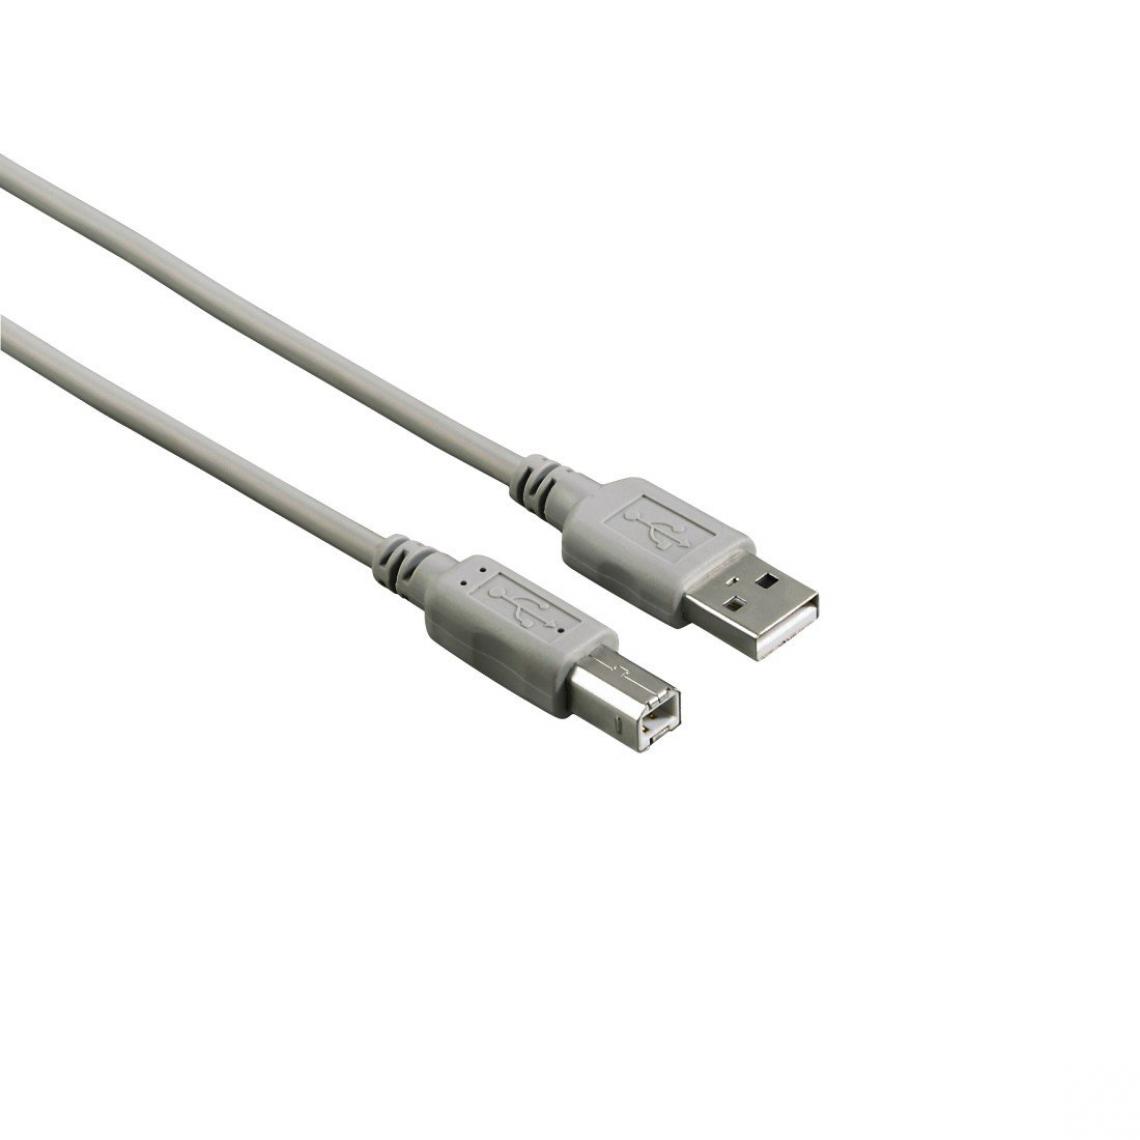 Ineck - INECK - Cordon USB A vers B 1.8 m pour imprimante et fax - Câble antenne